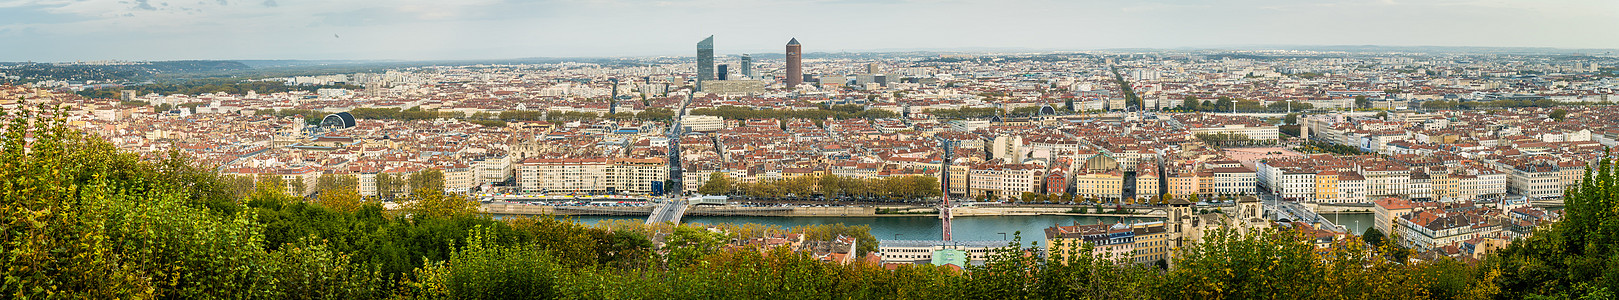 法国里昂市的全景图片